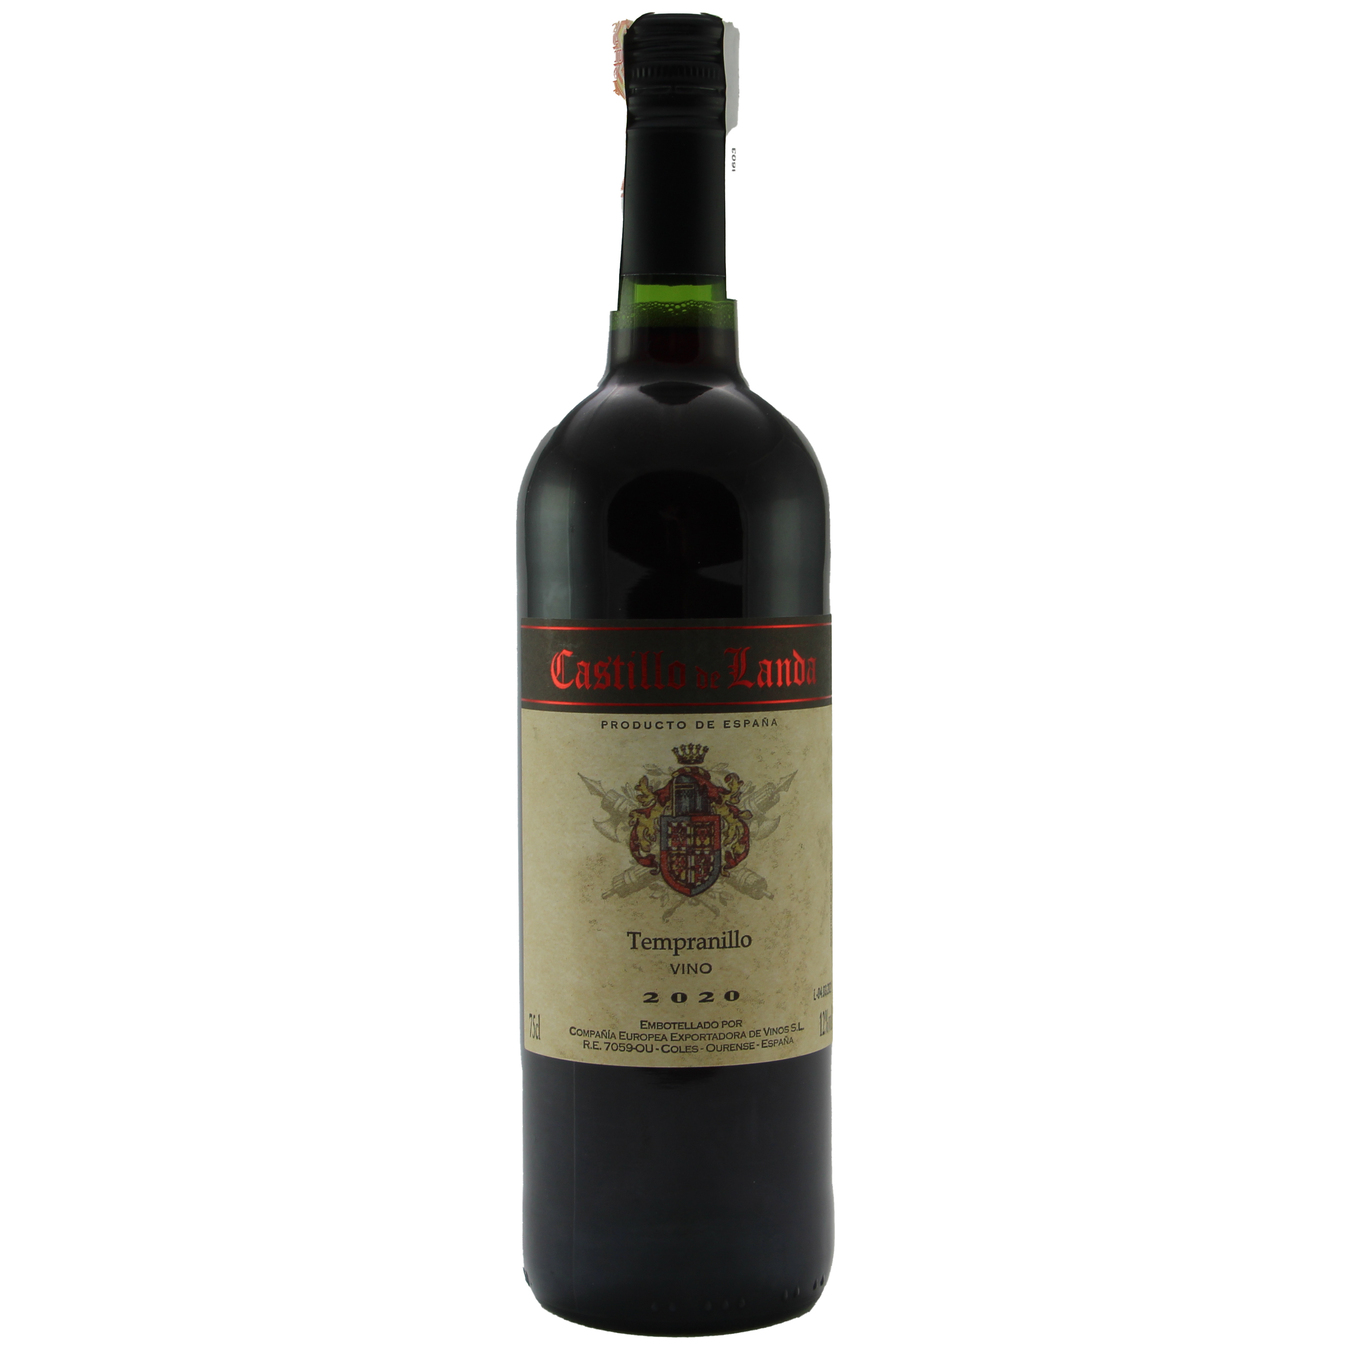 Castillo de landa Temranillo red dry wine 12% 0,75l